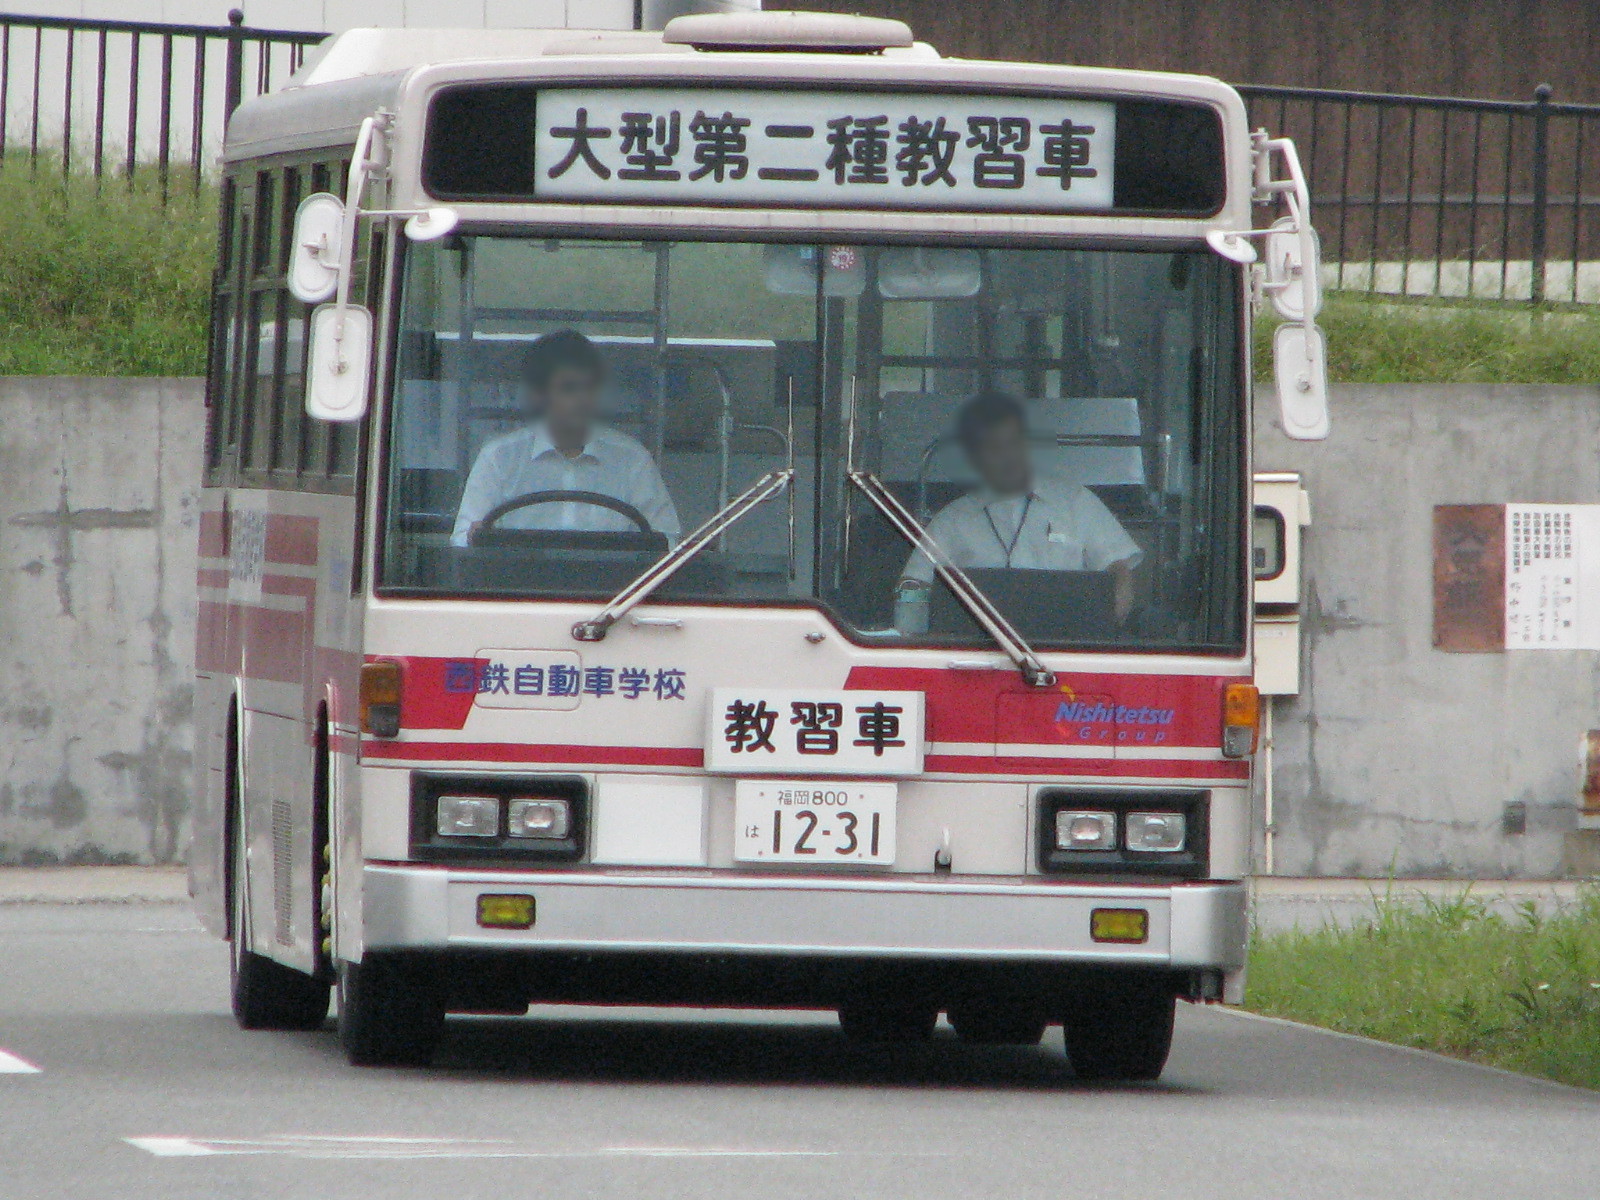 福岡800は12-31